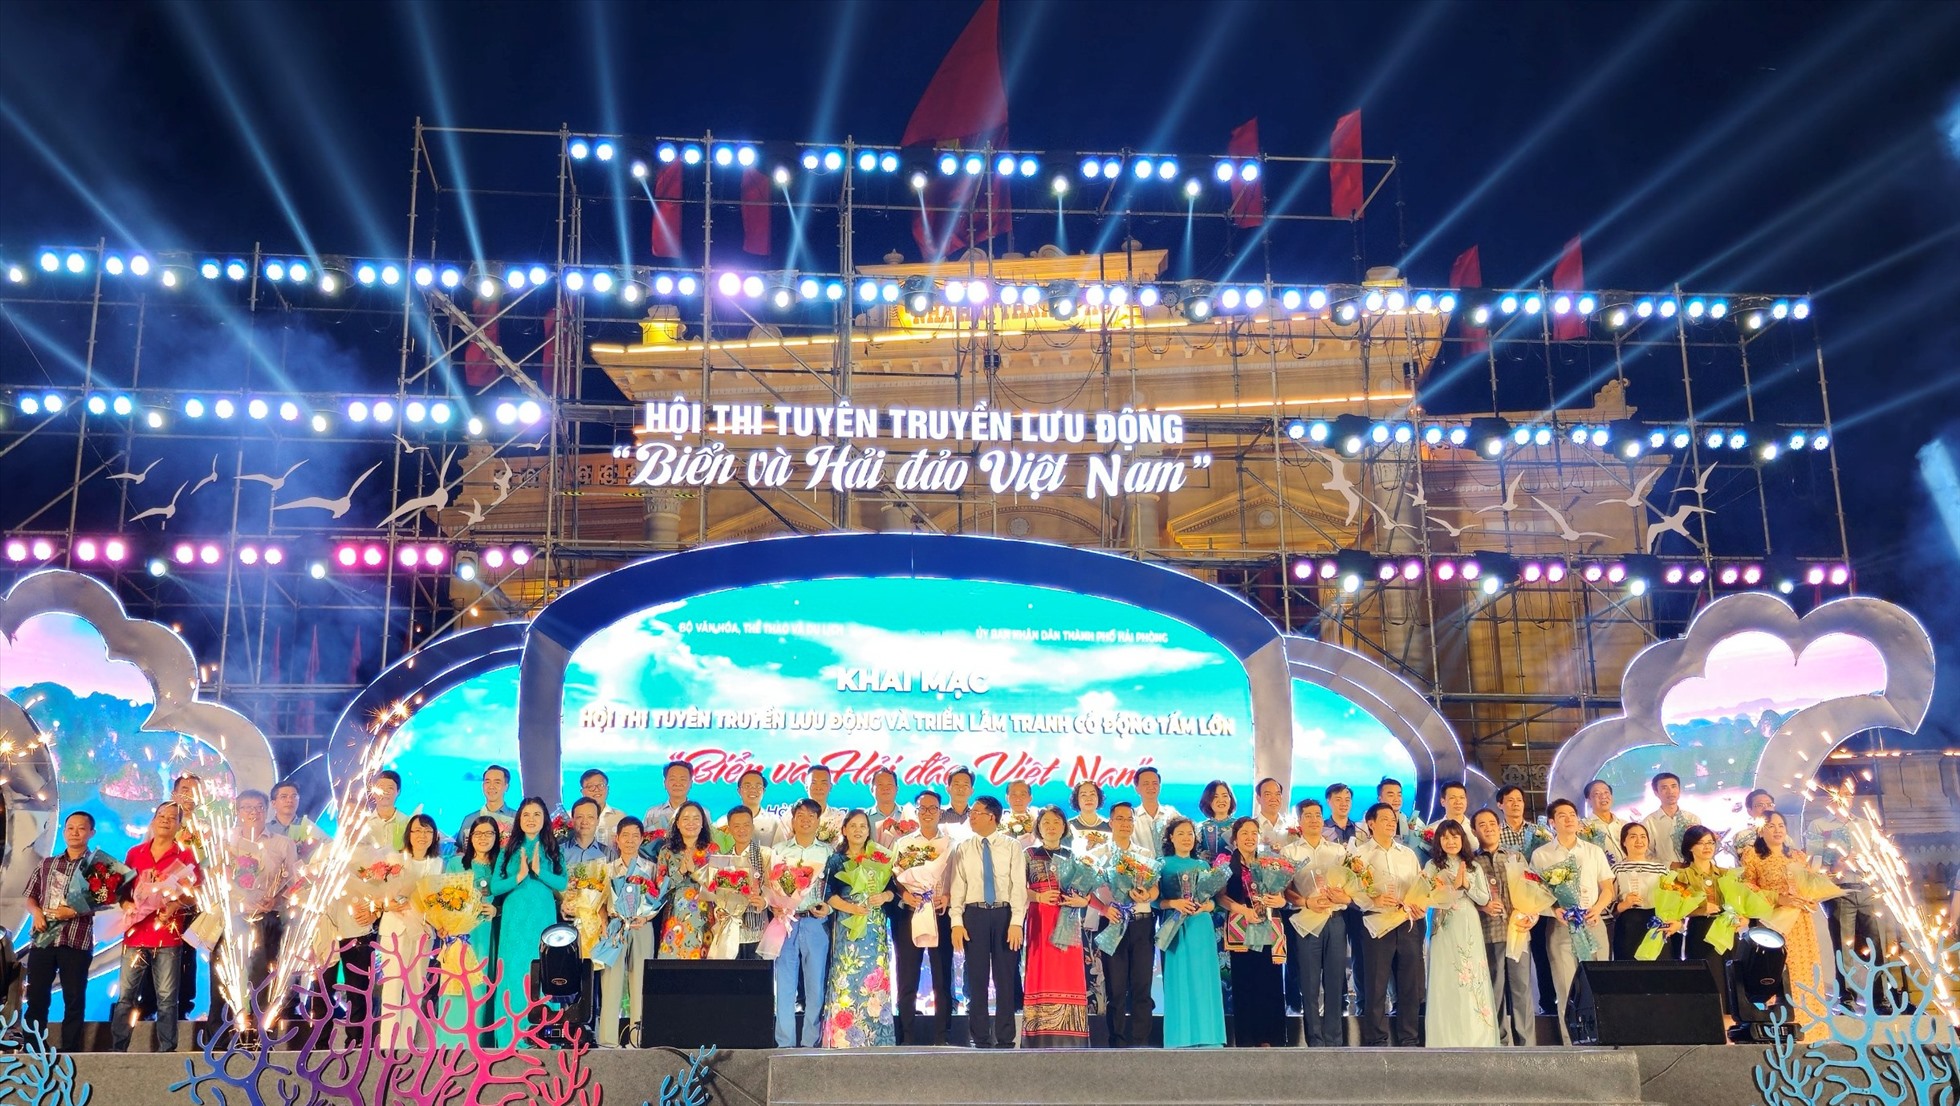 46 đội đến từ các tỉnh, thành phố tham gia hội thi tuyên truyền lưu động Biển và Hải đảo Việt Nam. Ảnh: Mai Dung